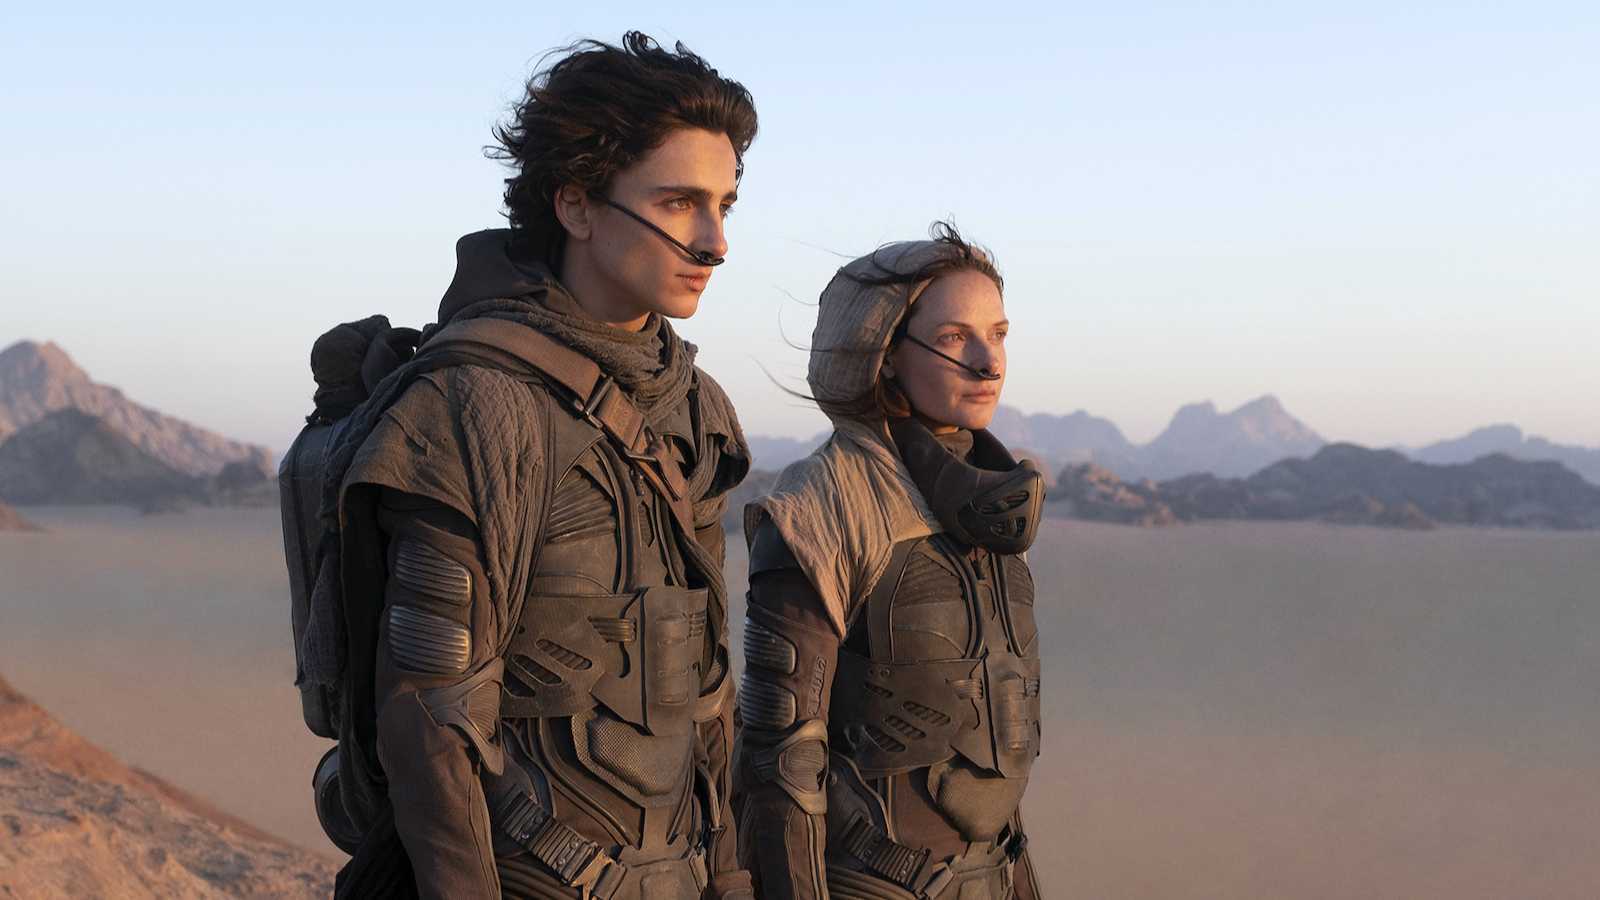 《沙丘》将有超过一小时IMAX特殊画幅